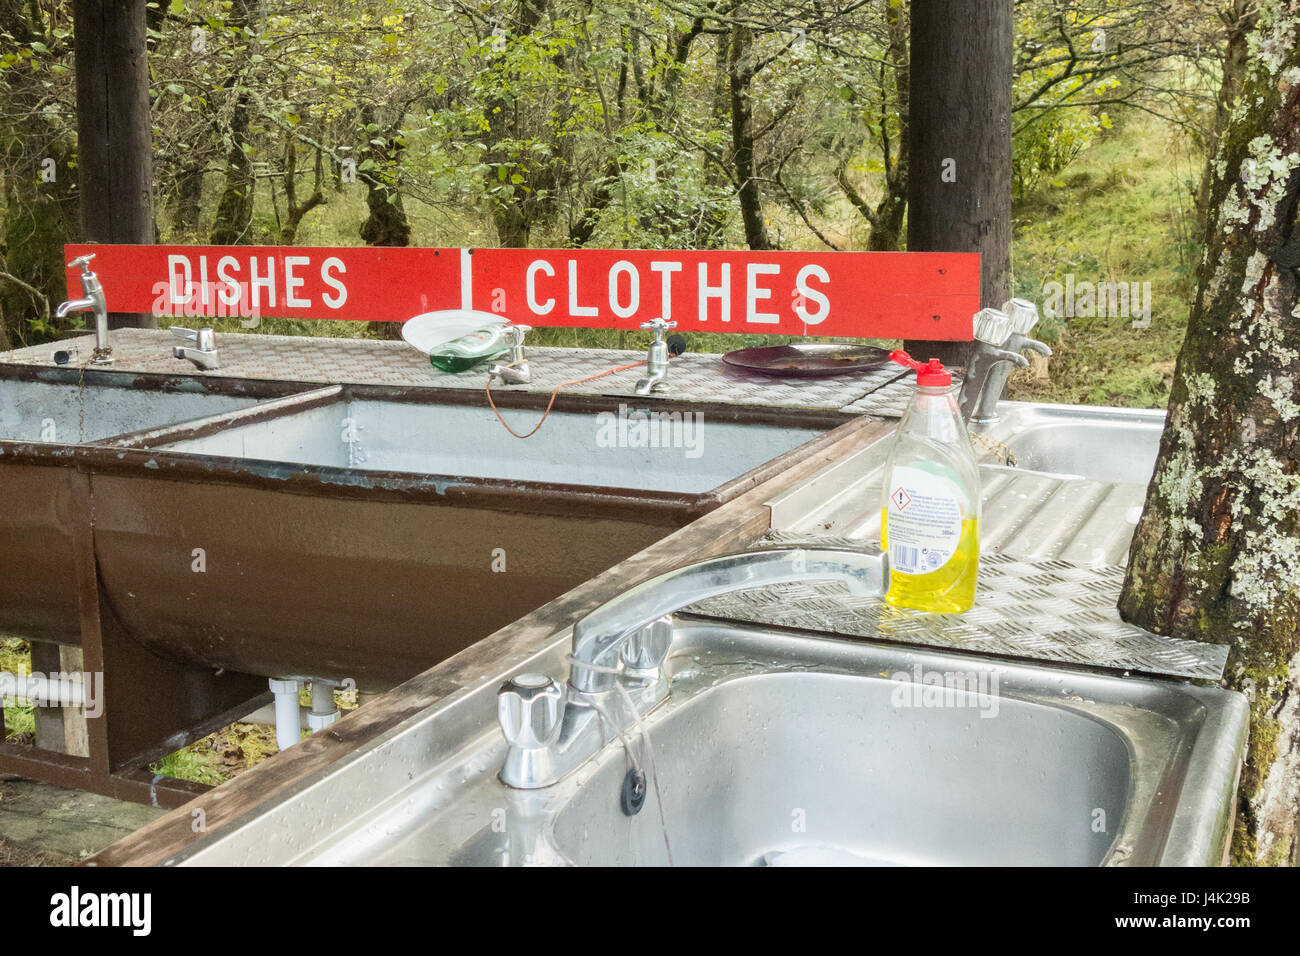 waschen Geschirr und Kleidung von hand - kleinen grundlegende Campingplatz Abwasch Einrichtungen - Eichhörnchen Campingplatz, Glencoe, Scotland, UK Stockfoto